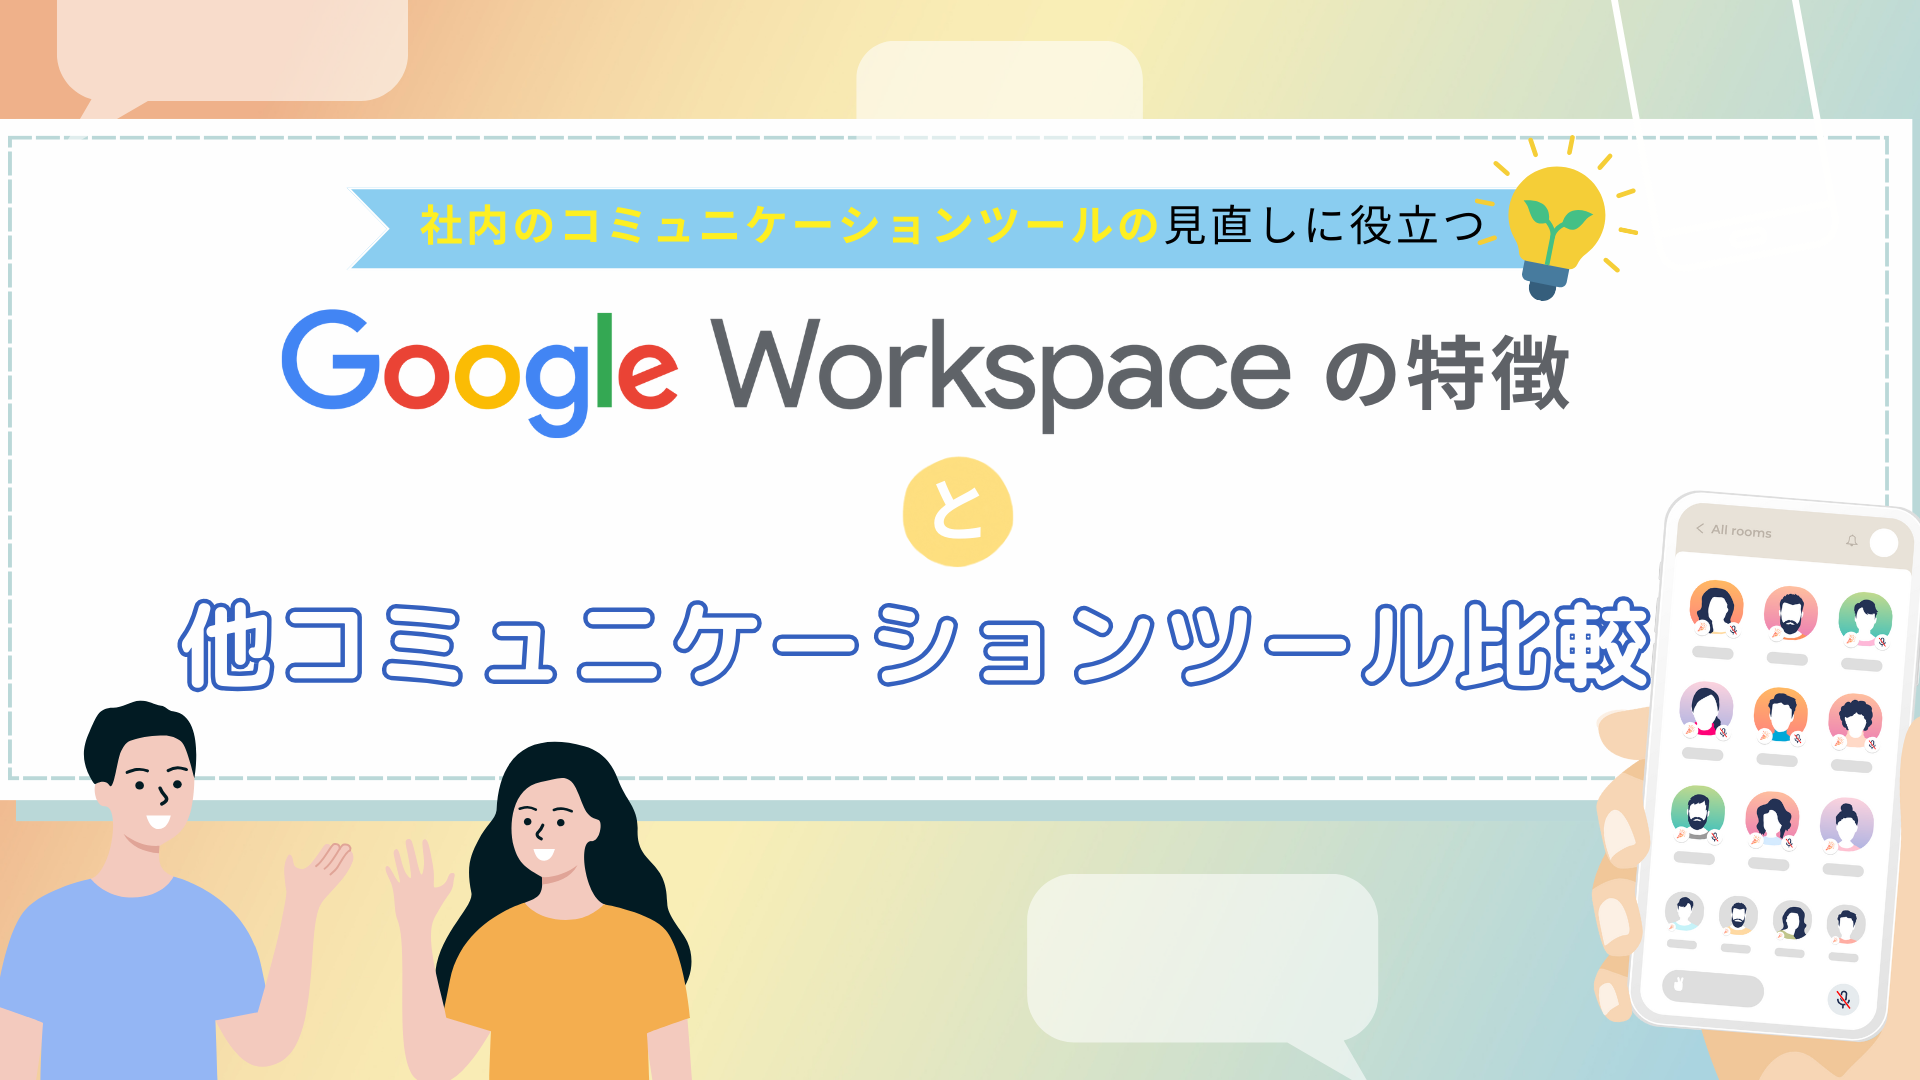 GoogleWorkspace の特徴と他コミュニケーションツール比較